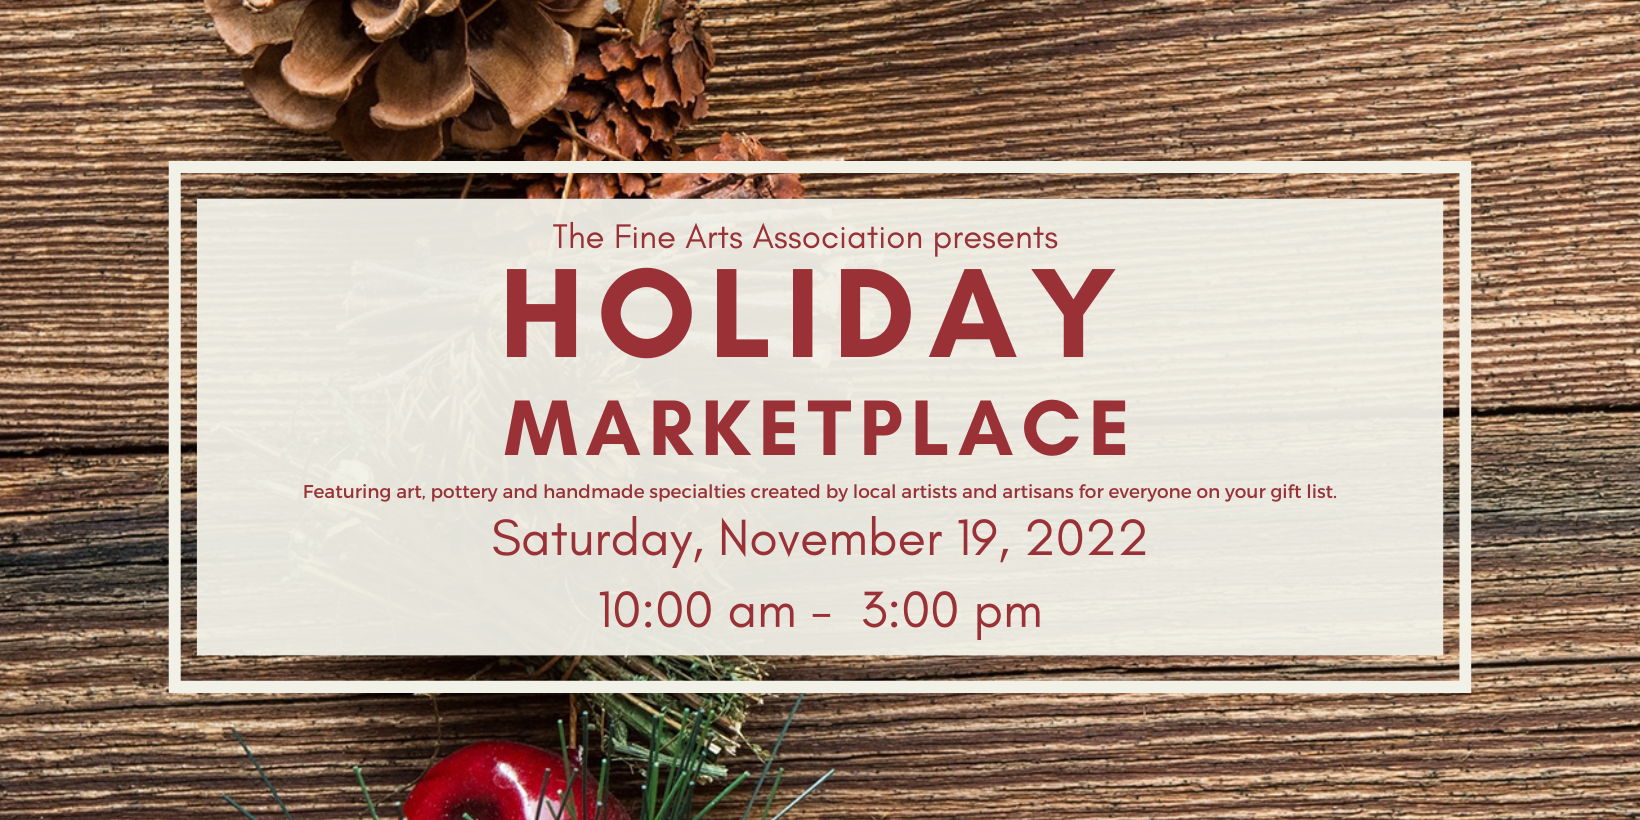 Holiday Marketplace promotional image